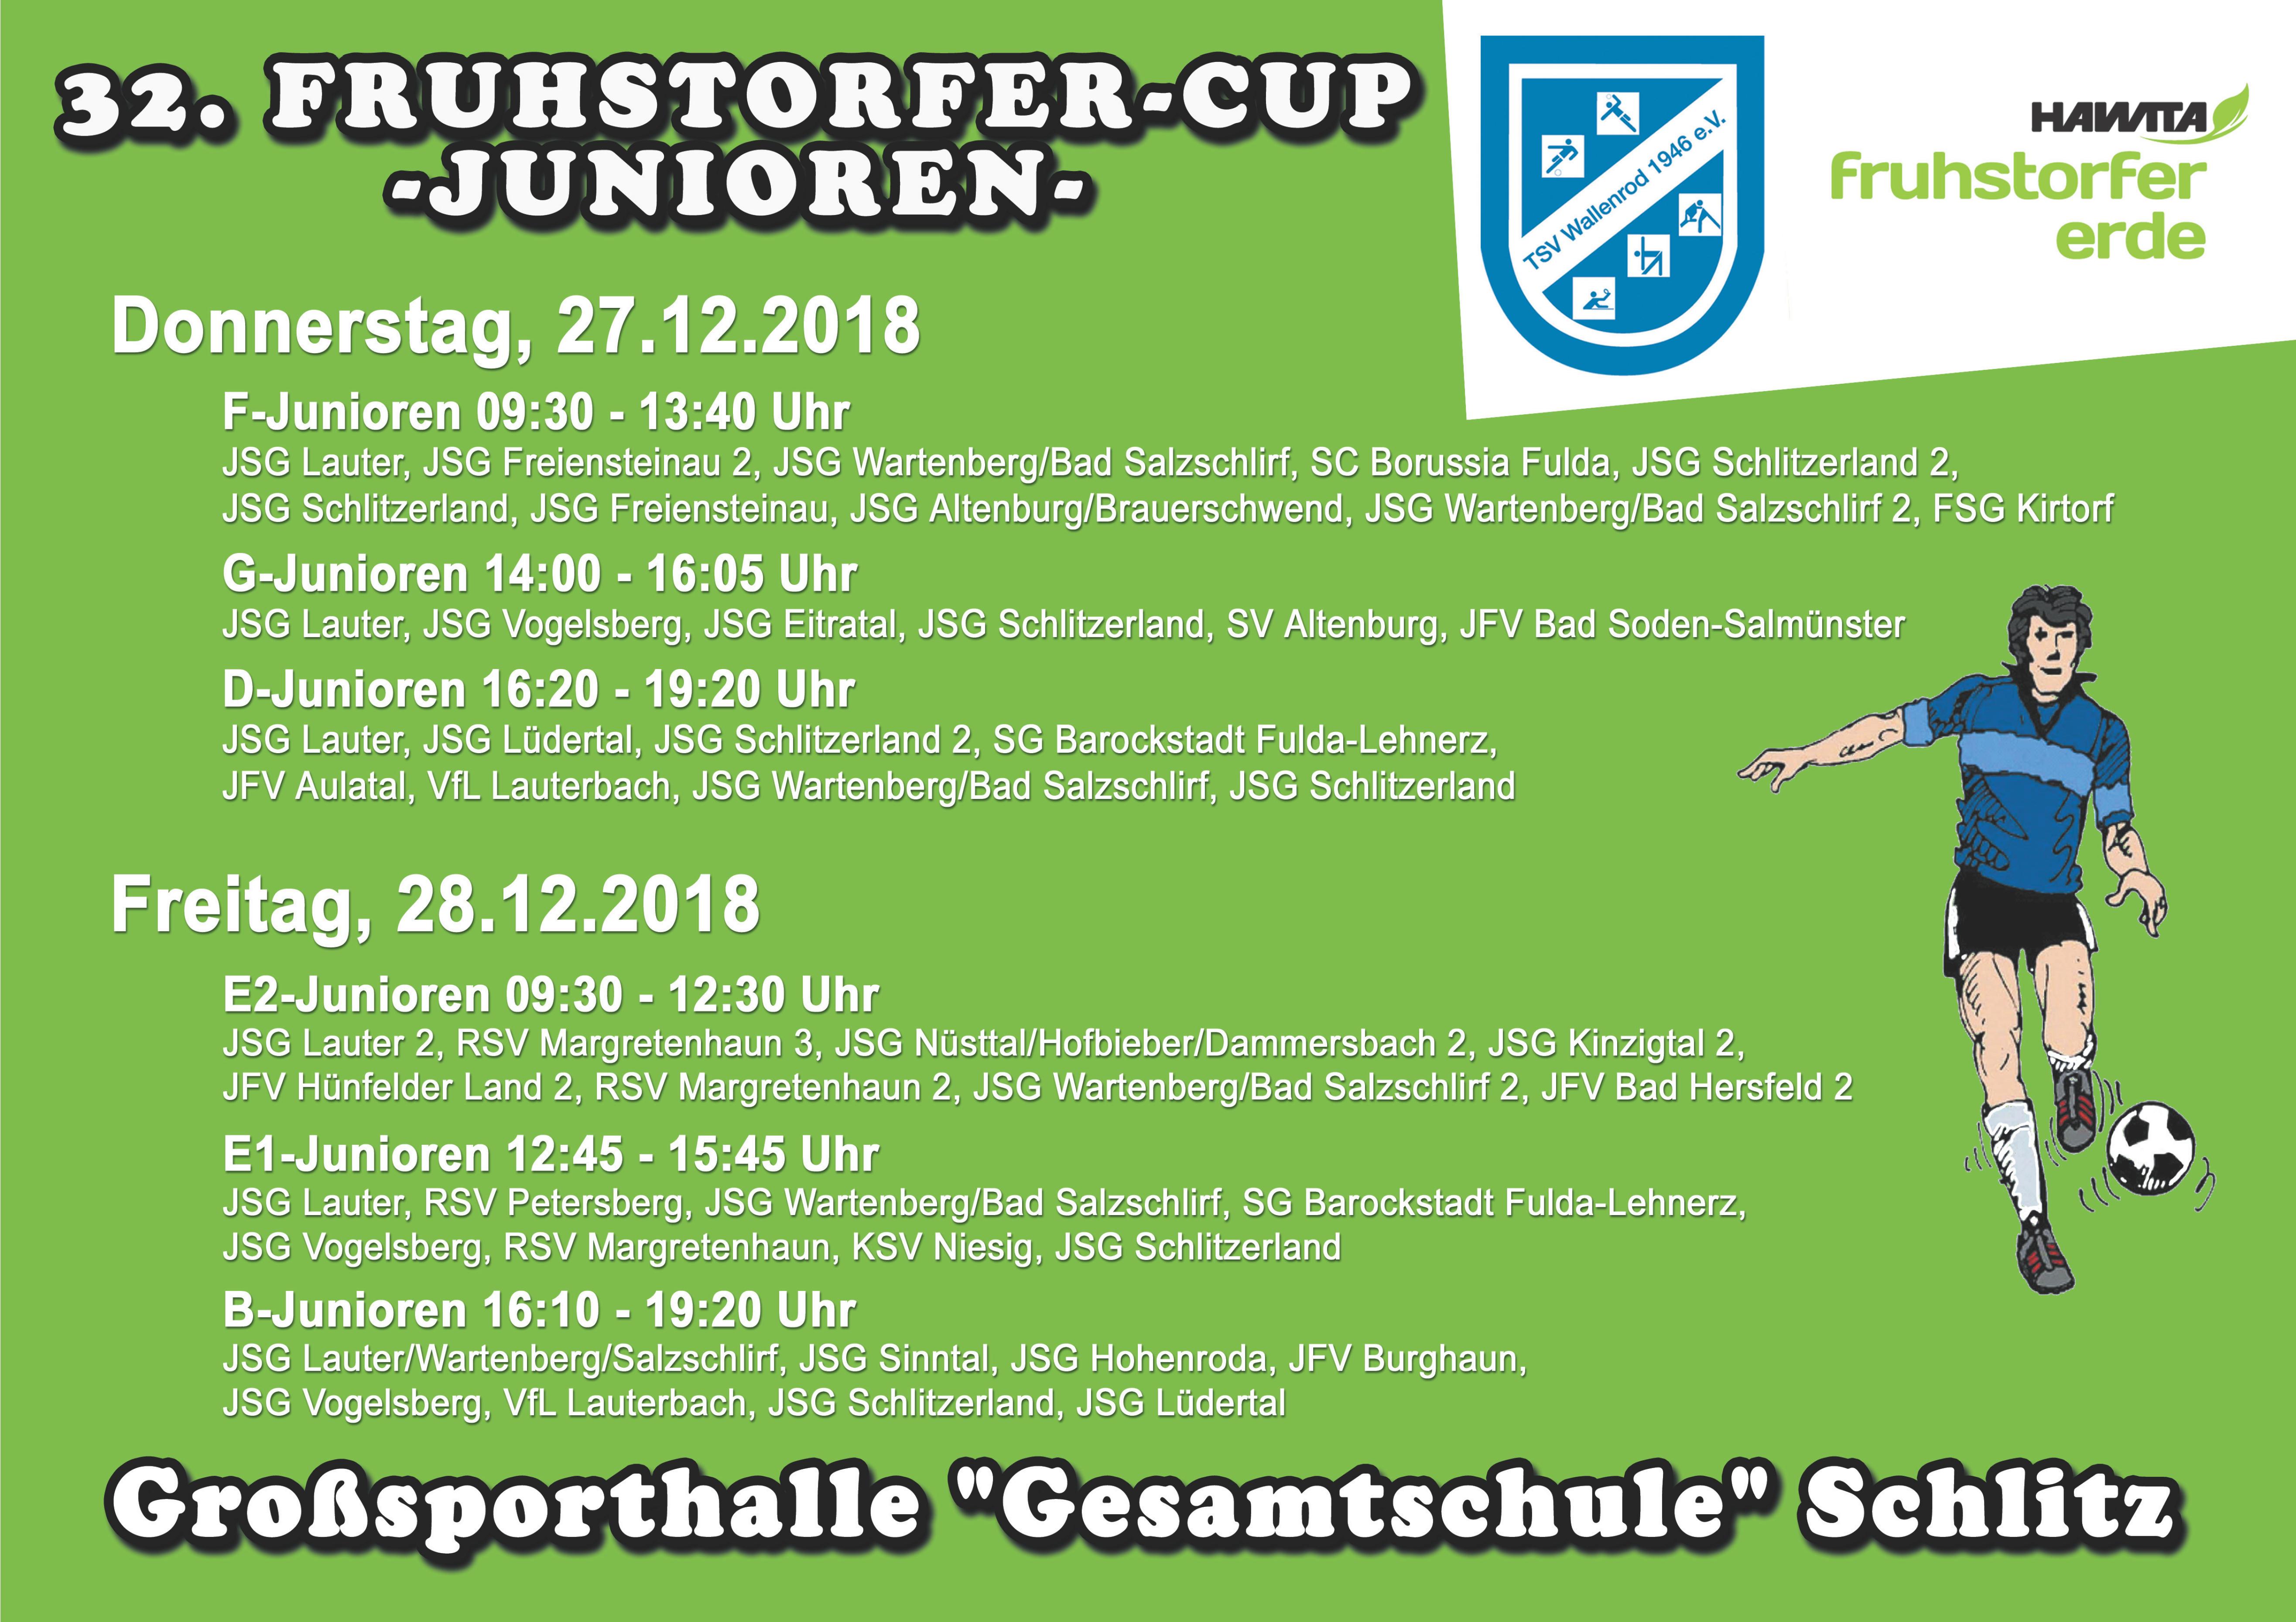 Spielpläne und Ergebnisse Fruhstorfer-Cup 2018